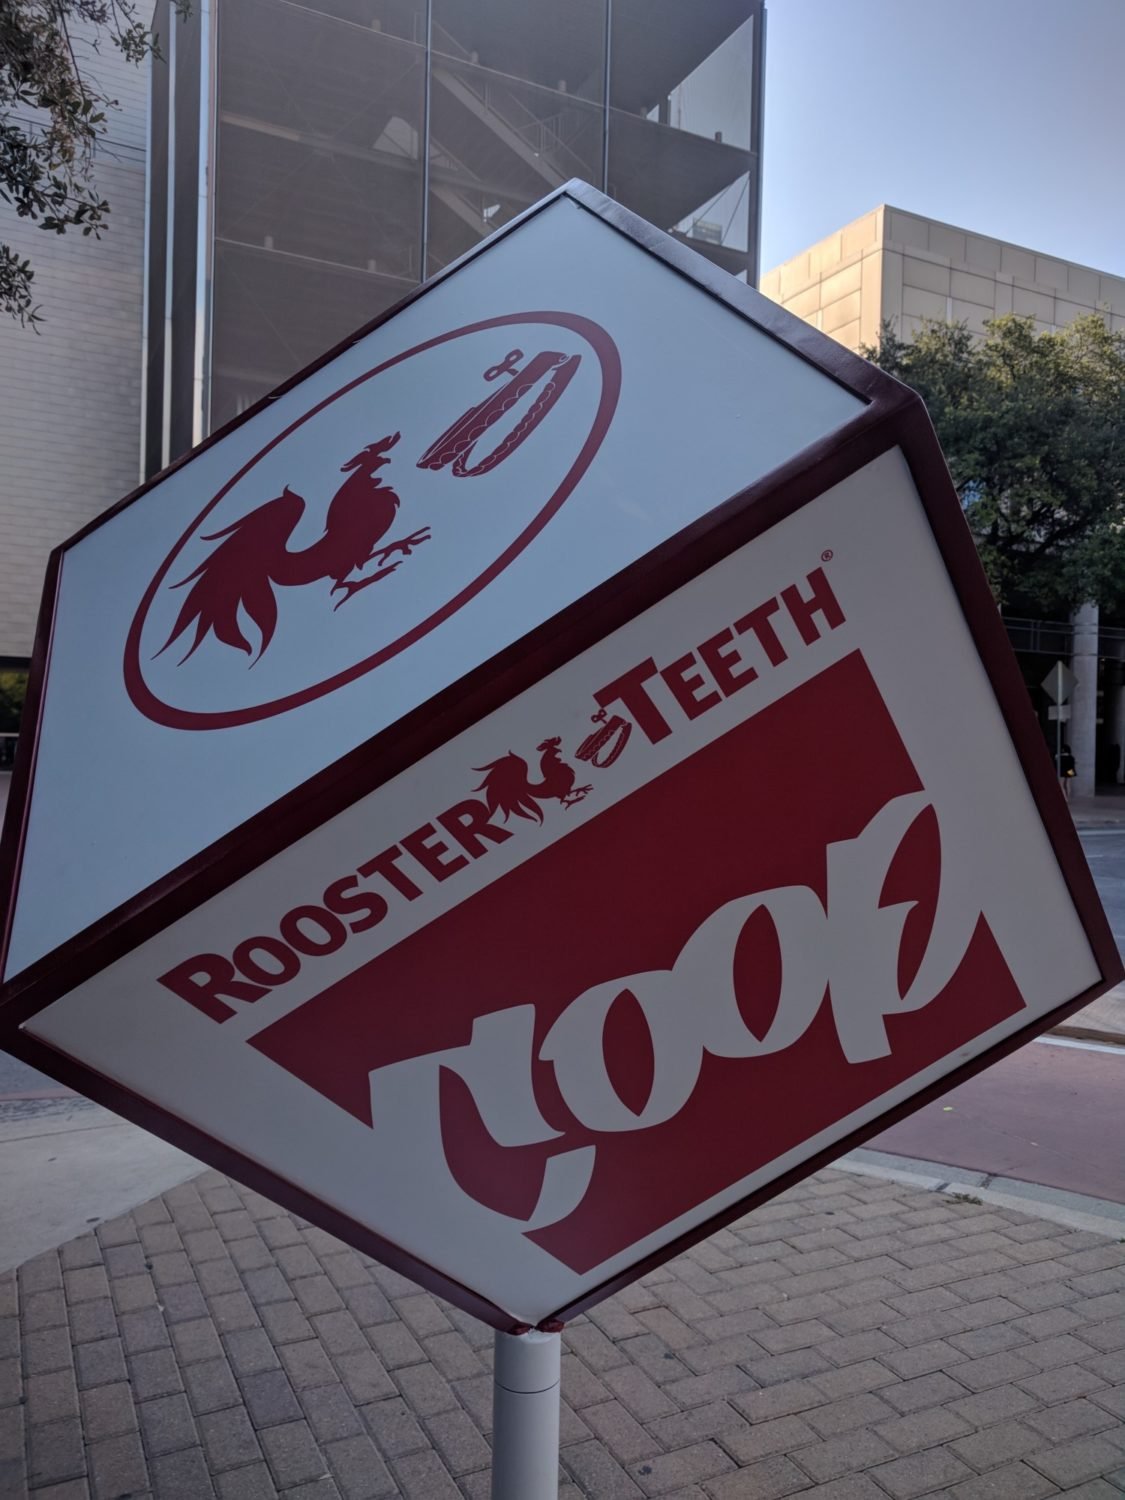 Rooster-Teeth-The-Coop-1-e1535119941422.jpg